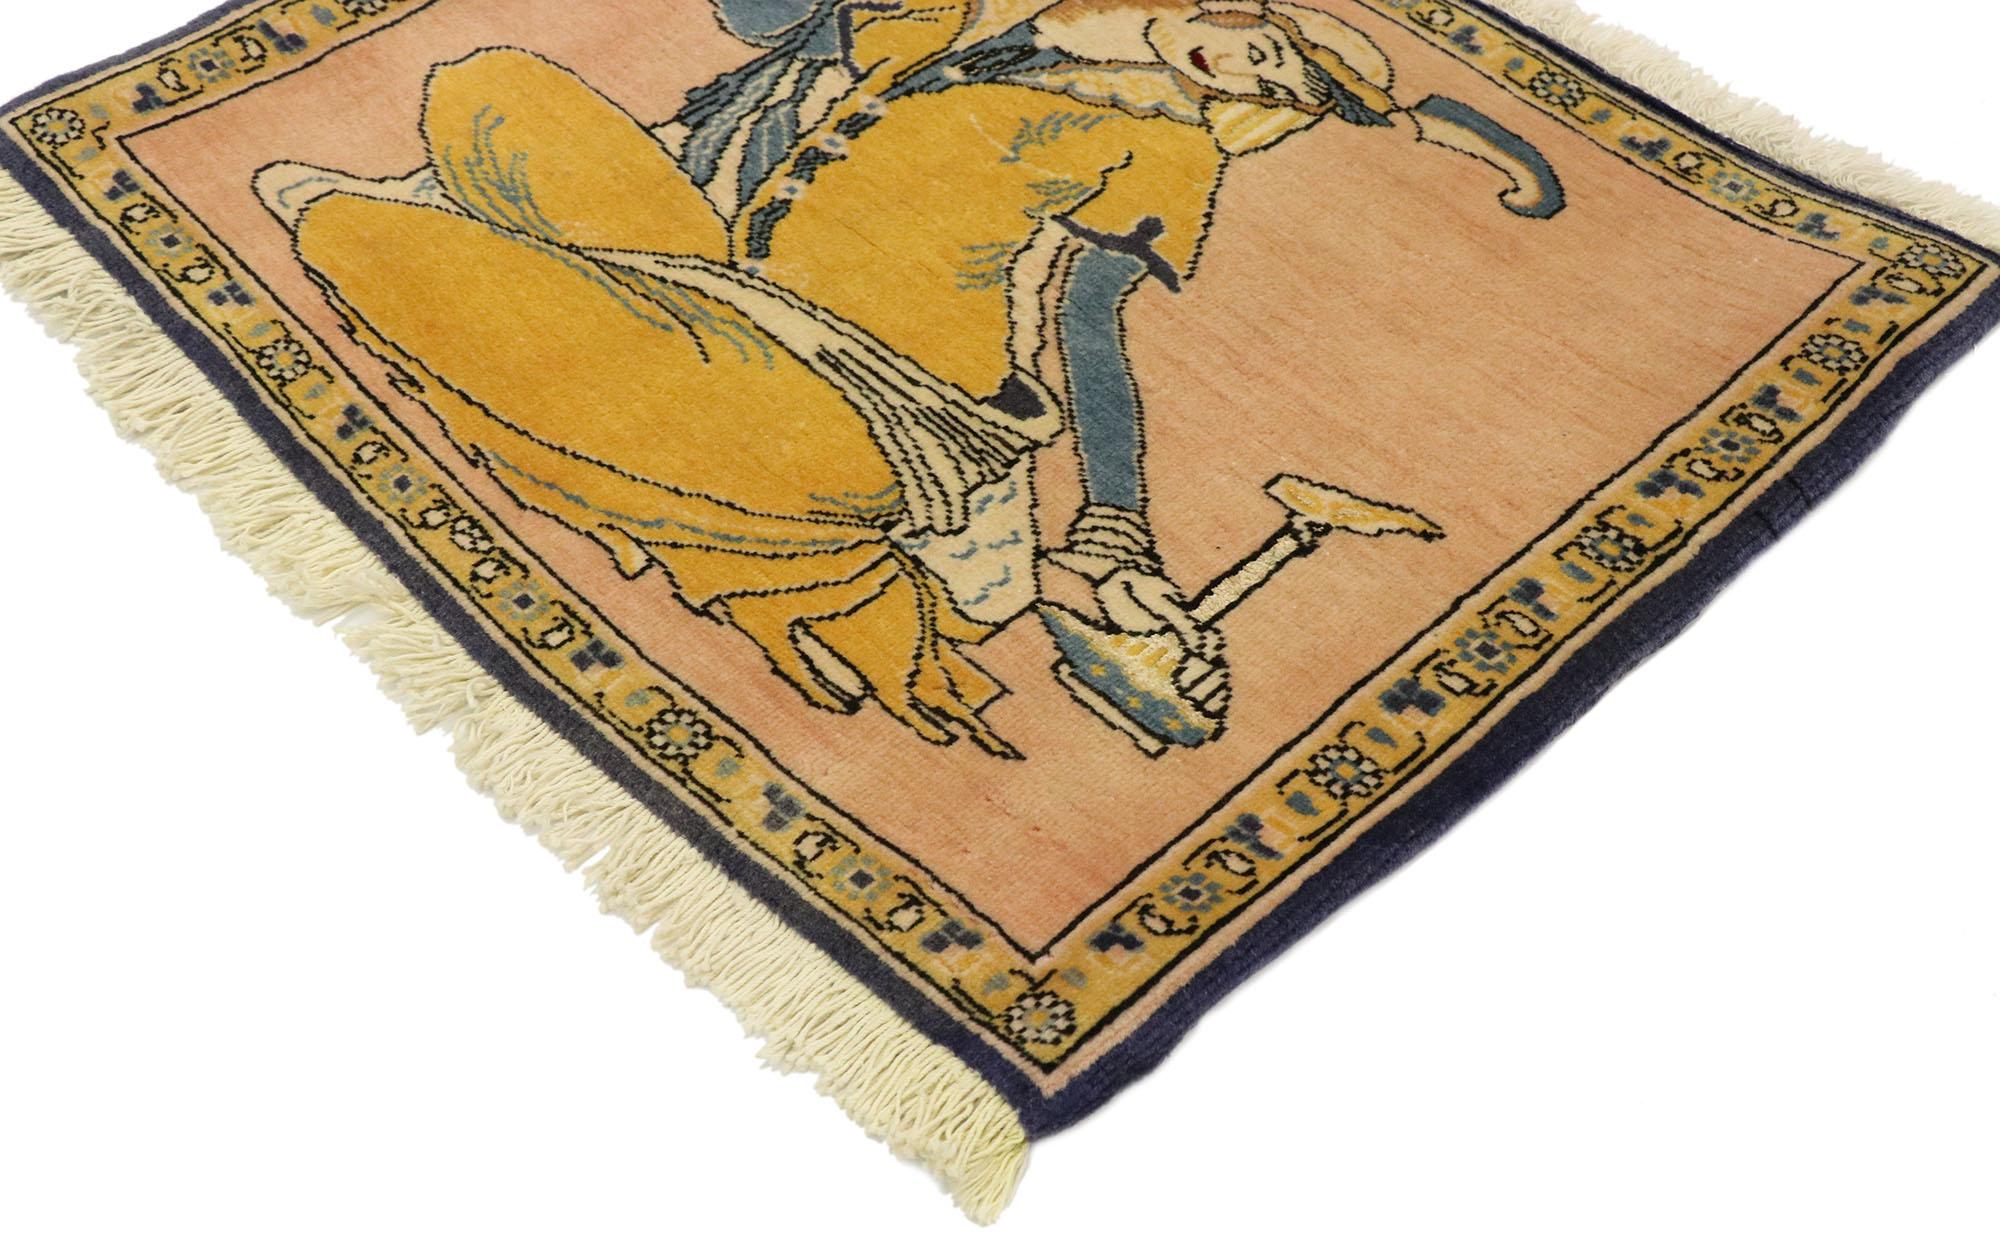 76195 Persischer Khamseh Bildteppich mit Derwisch-Szene, persischer Wandbehang. Das alte Persien ist der wahre Ursprung des Weinbaus und des Weintrinkens, wie dieser handgeknüpfte persische Khamseh-Bildteppich aus Wolle zeigt. Dieser zarte und